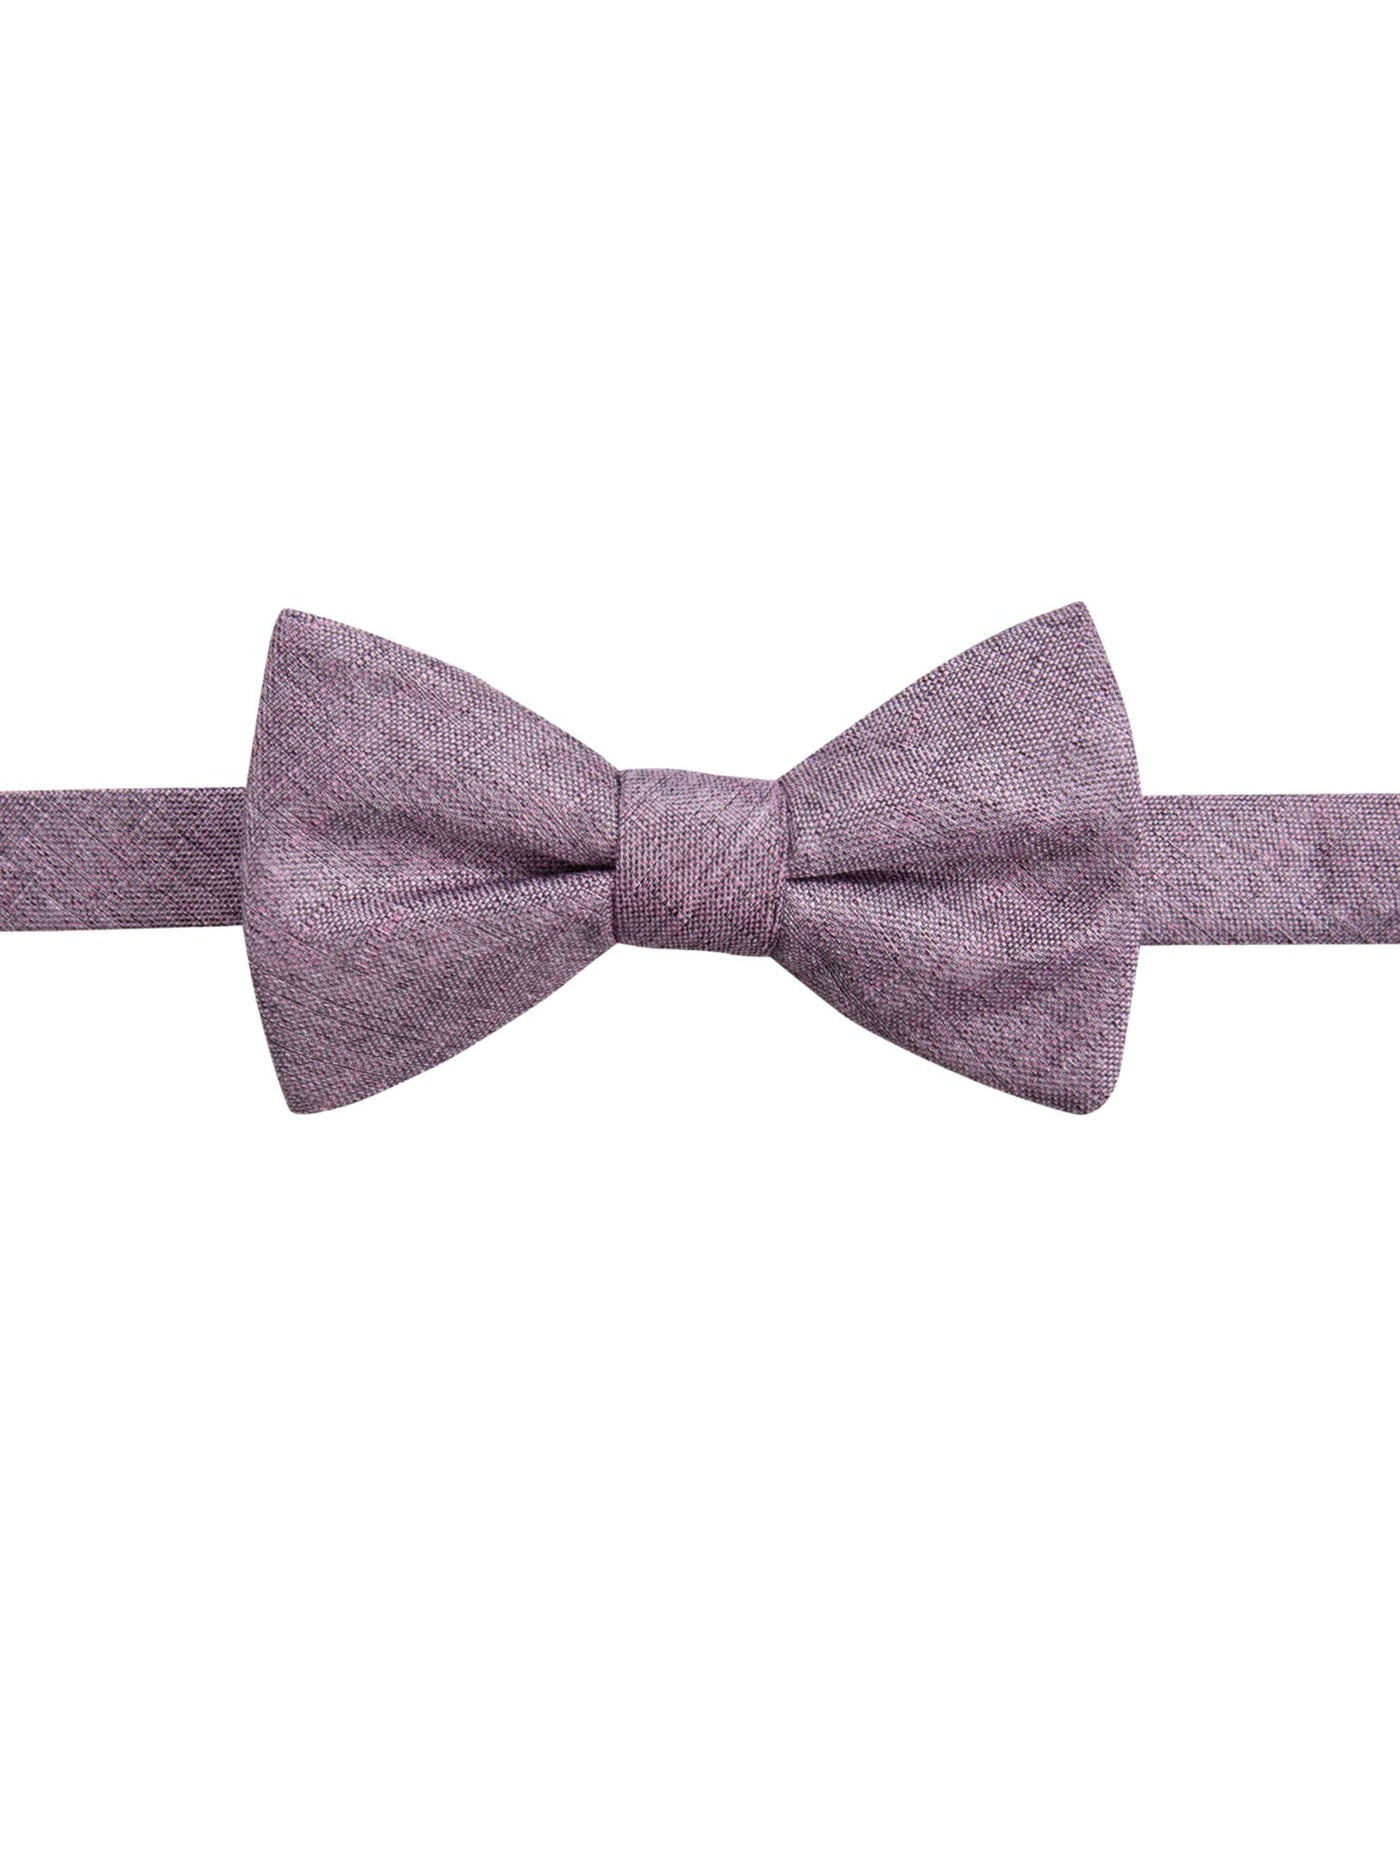 RYAN SEACREST Mens Pink Textured Silk Bow Tie